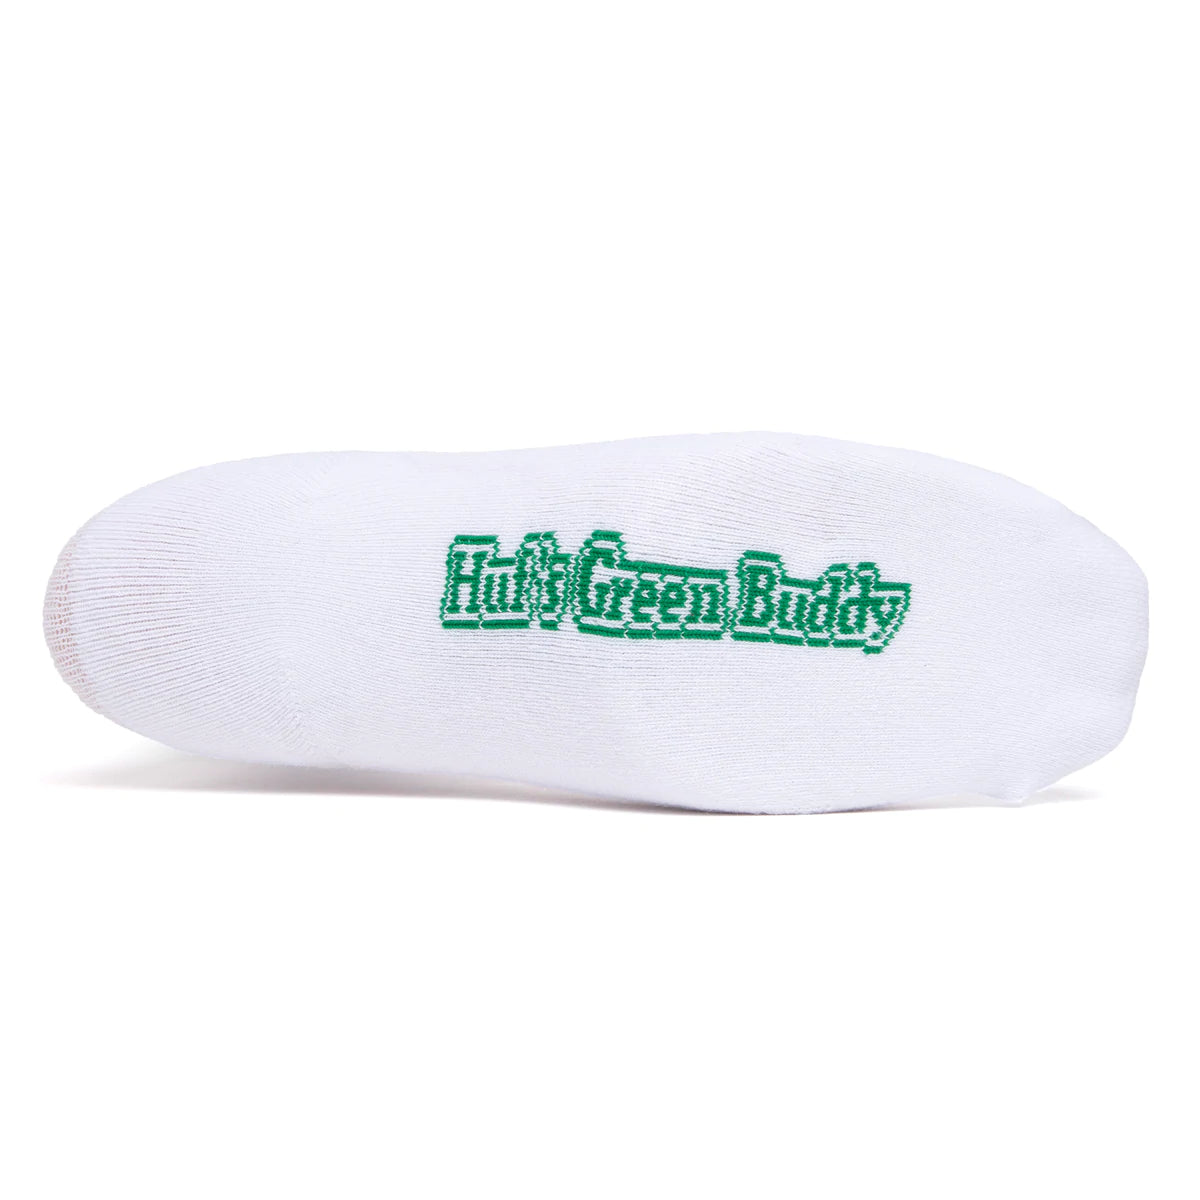 Huf Green Buddy Spotlight Sock